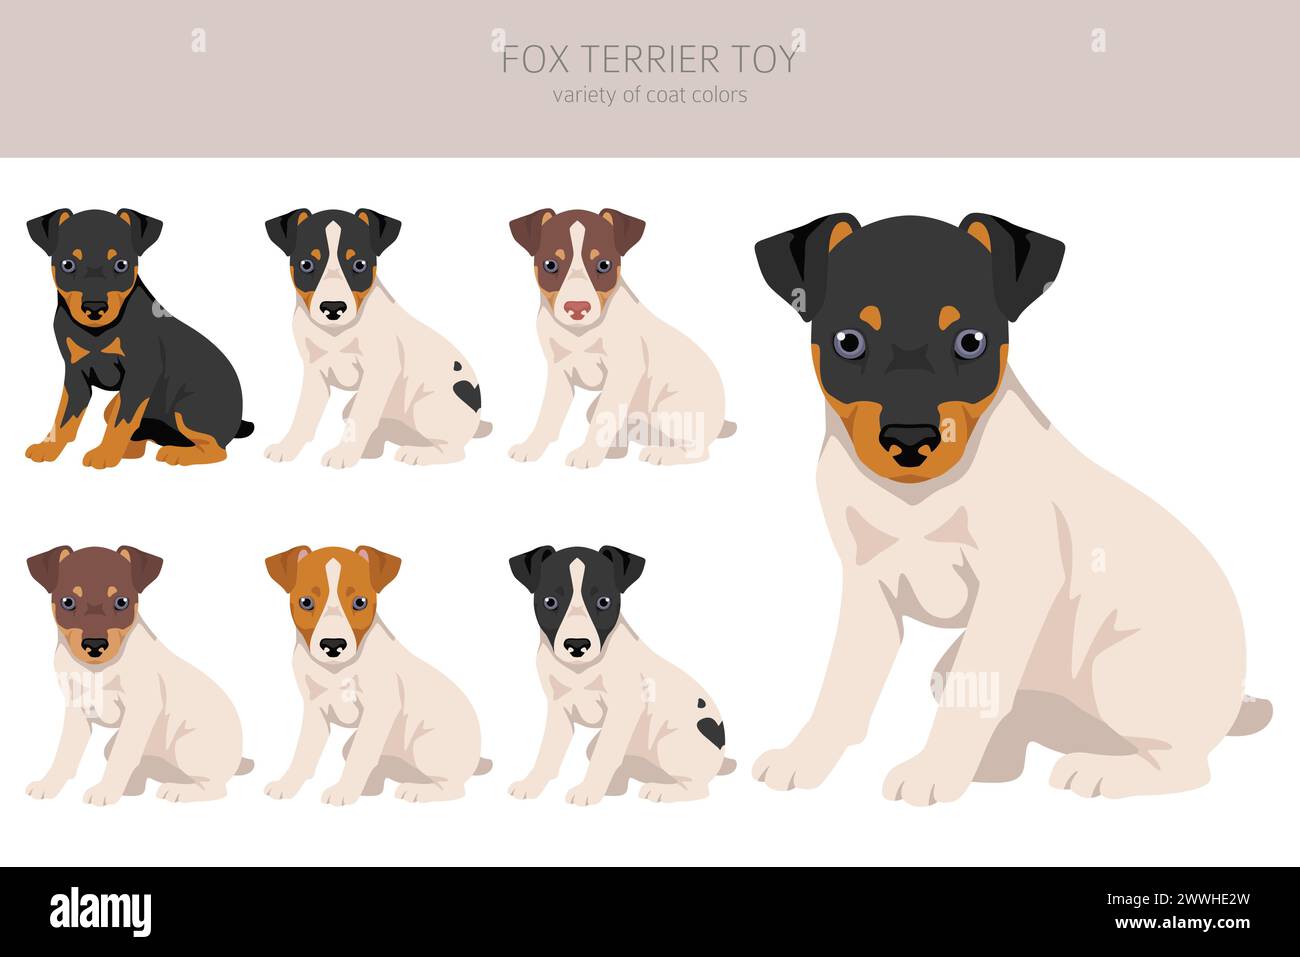 Clipart de chiot jouet Fox terrier. Différentes poses, couleurs de manteau définies. Illustration vectorielle Illustration de Vecteur